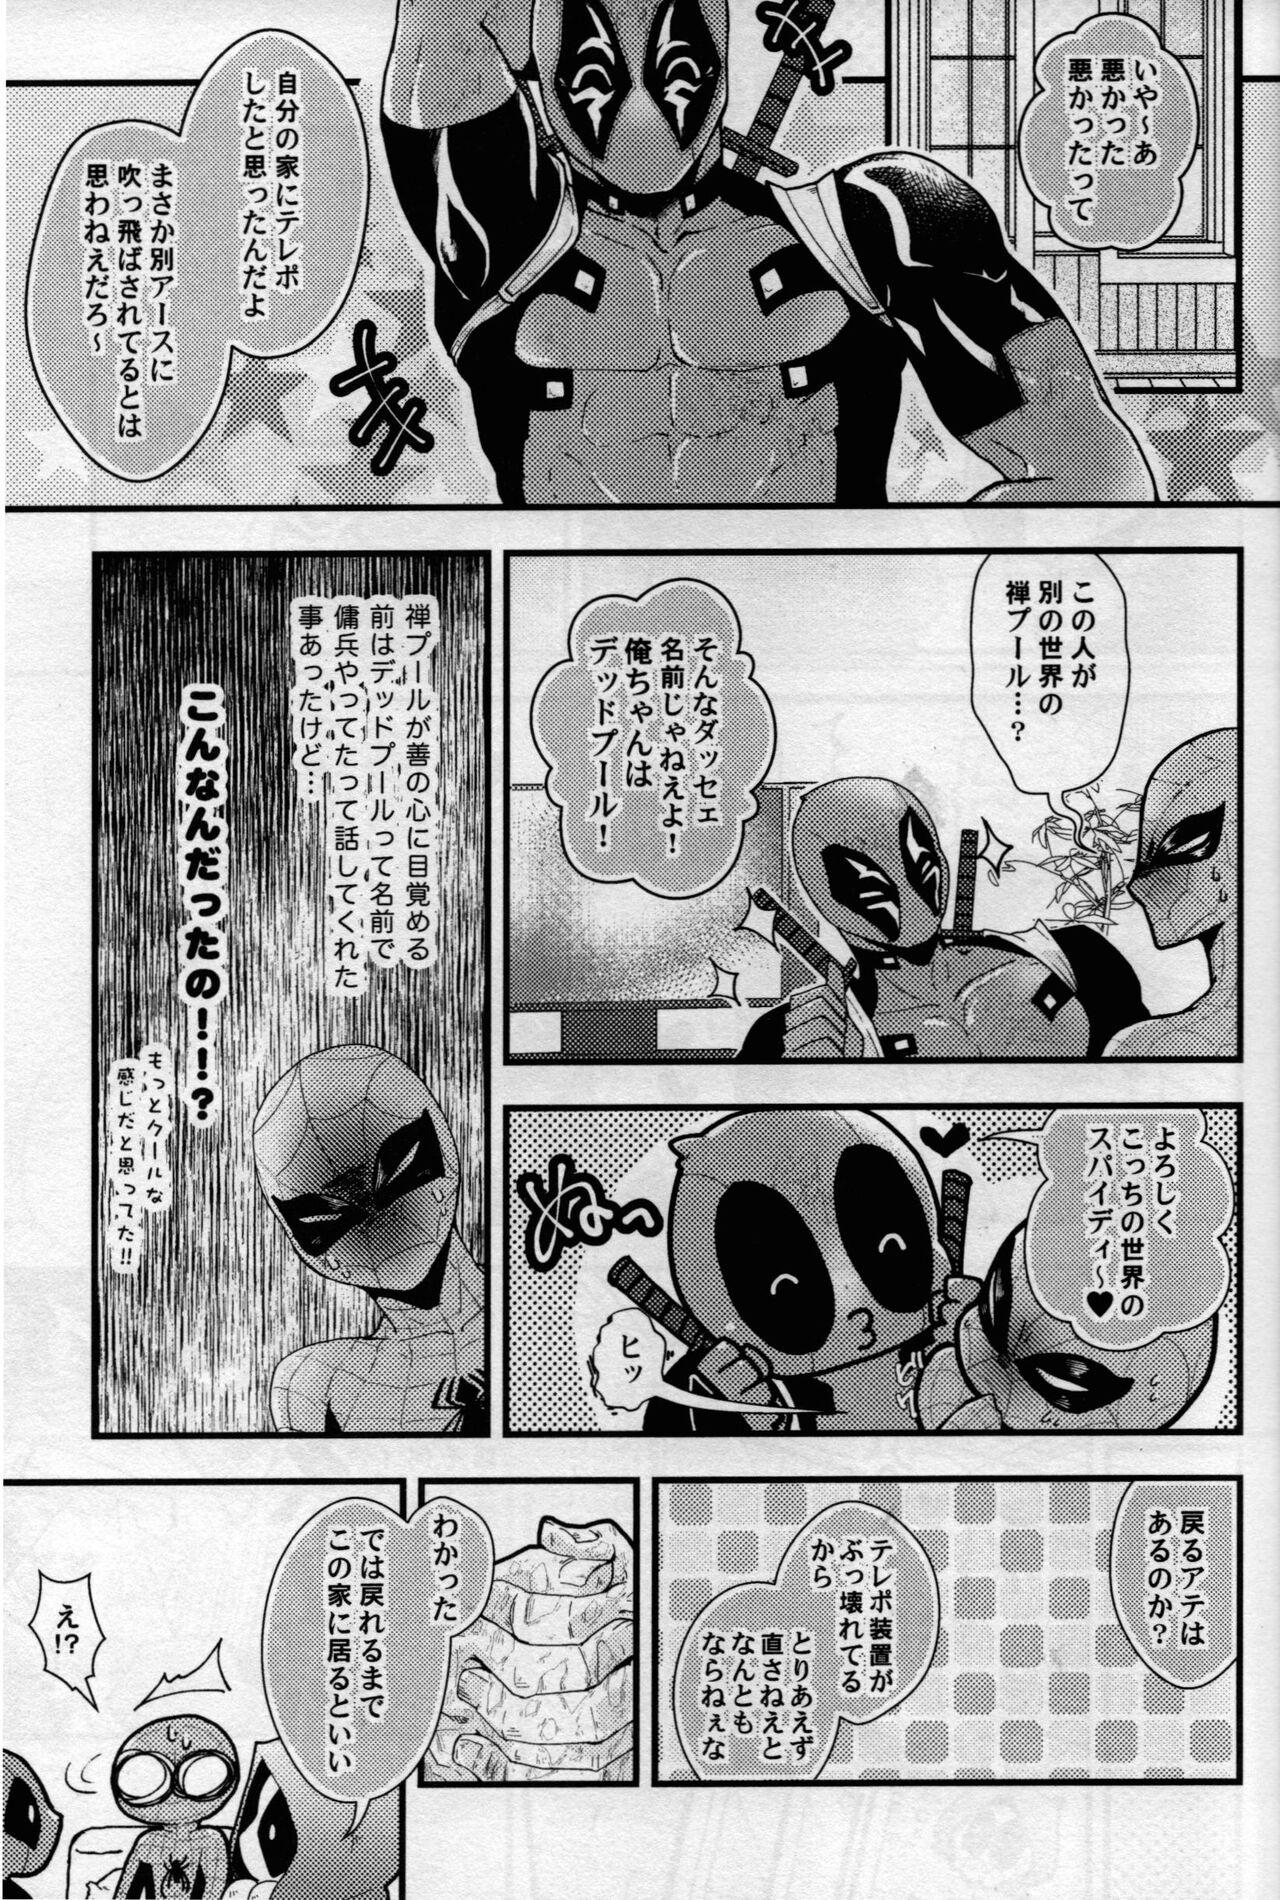 Swingers maruchiba → suraba → zu maruchibasurabazu - Spider man Korean - Page 6